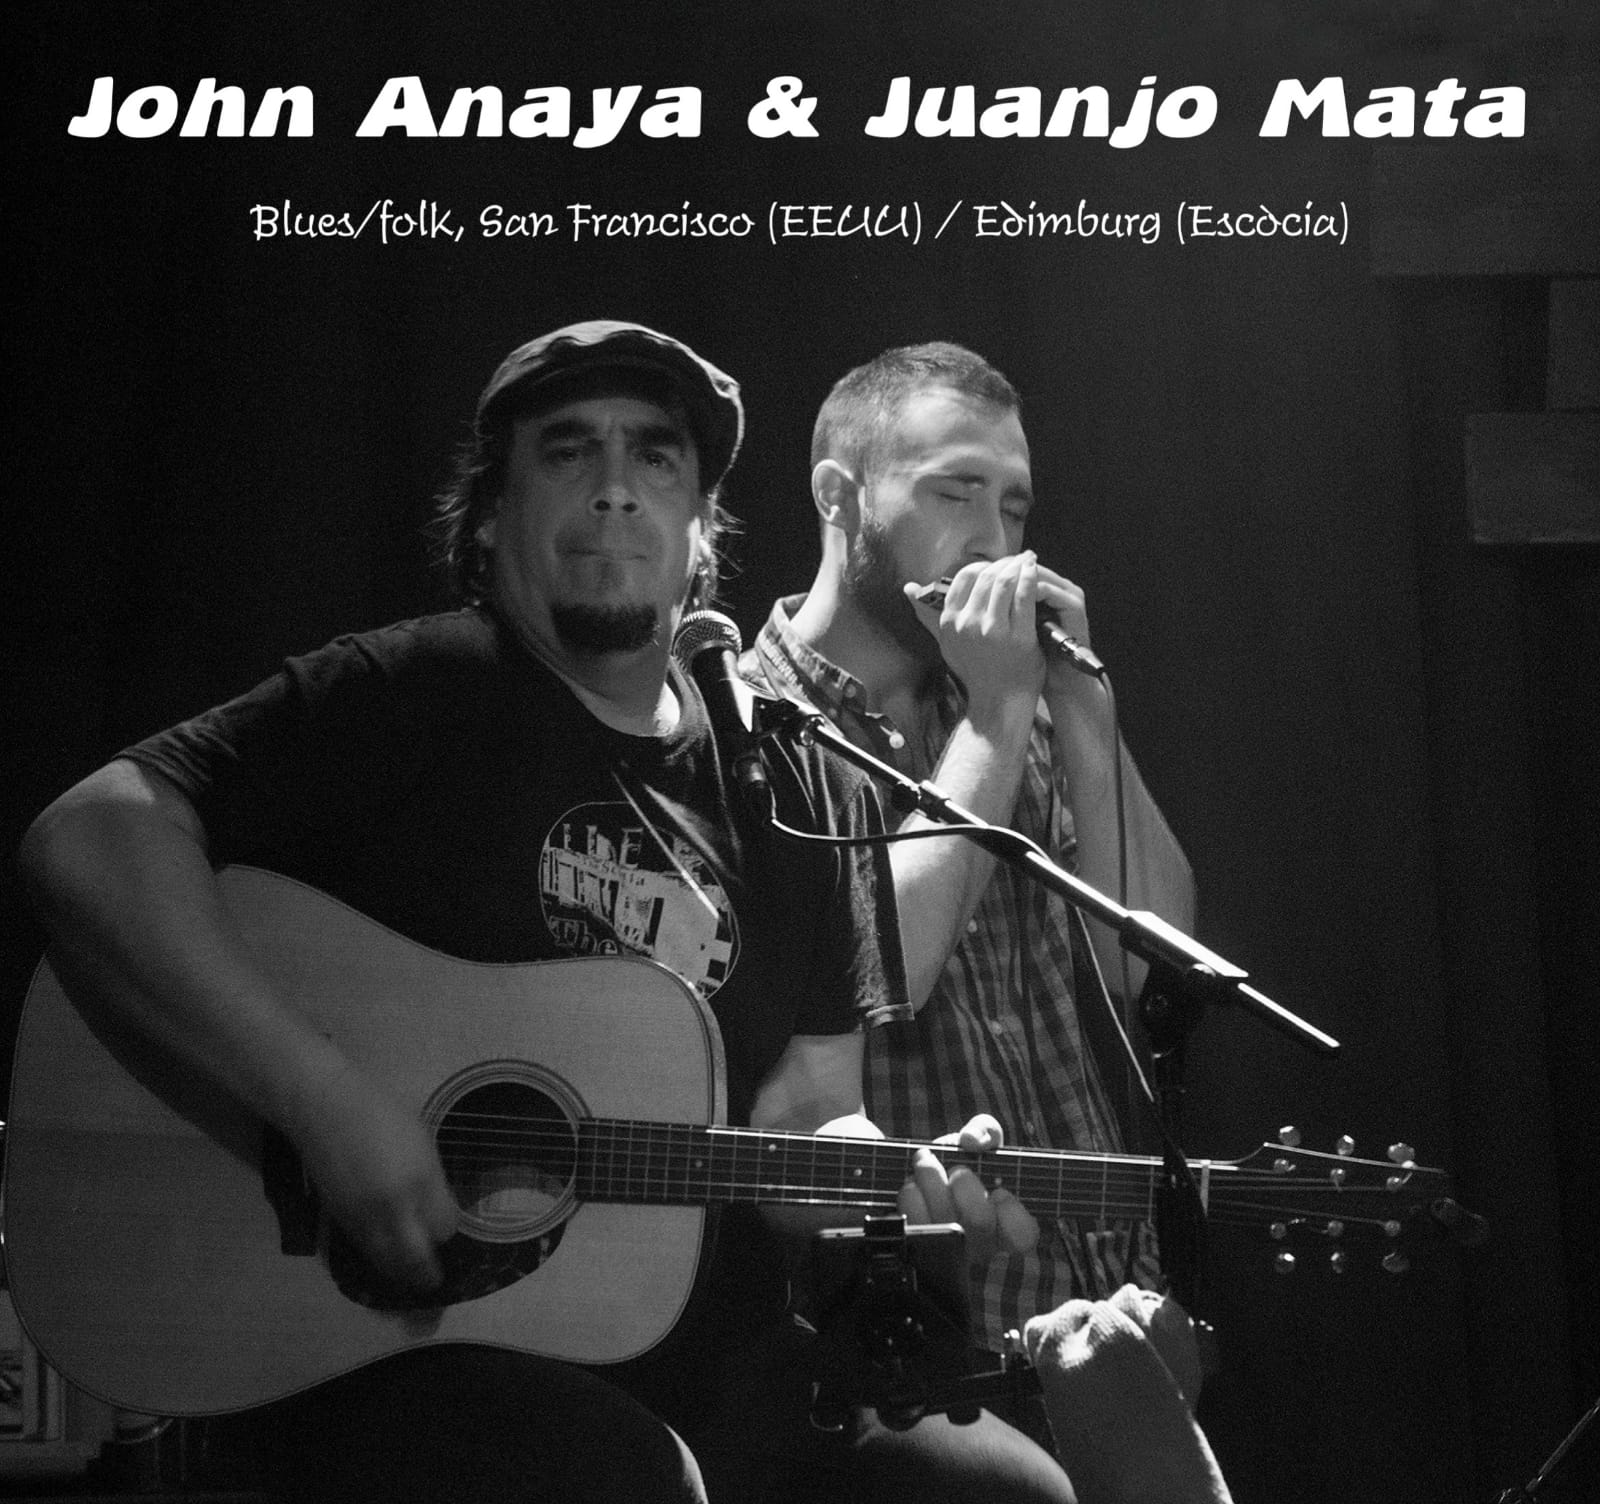 Concert John Anaya i Juanjo Mata – Cancel·lat